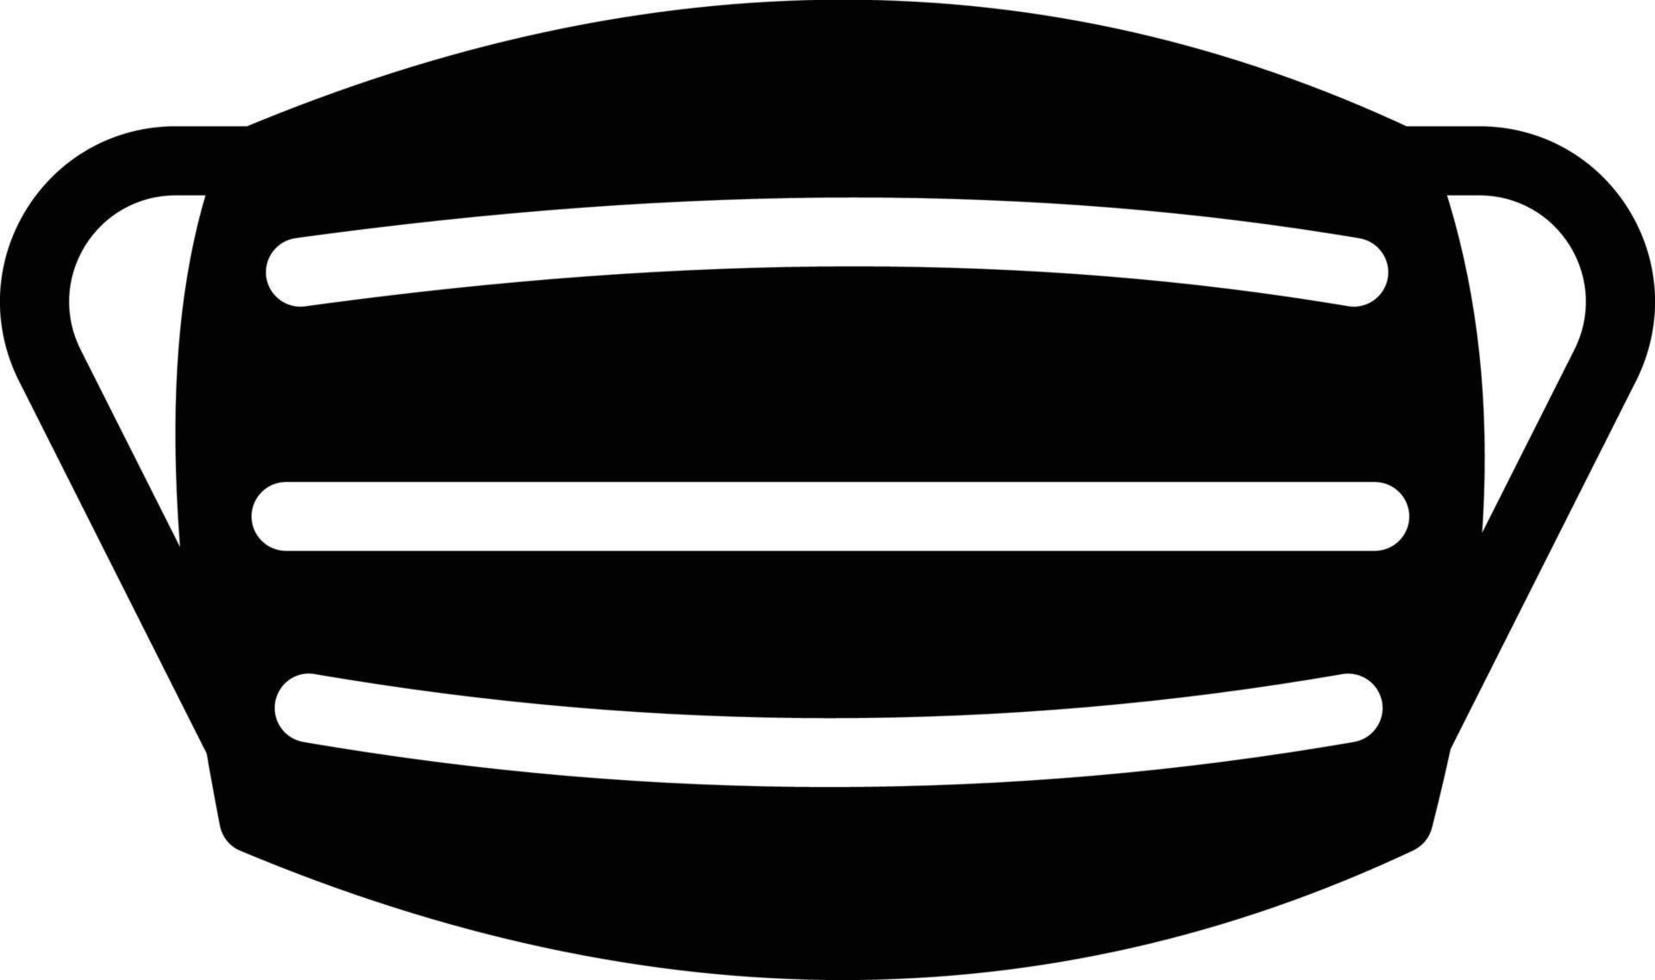 maschera illustrazione vettoriale su uno sfondo simboli di qualità premium. icone vettoriali per il concetto e la progettazione grafica.